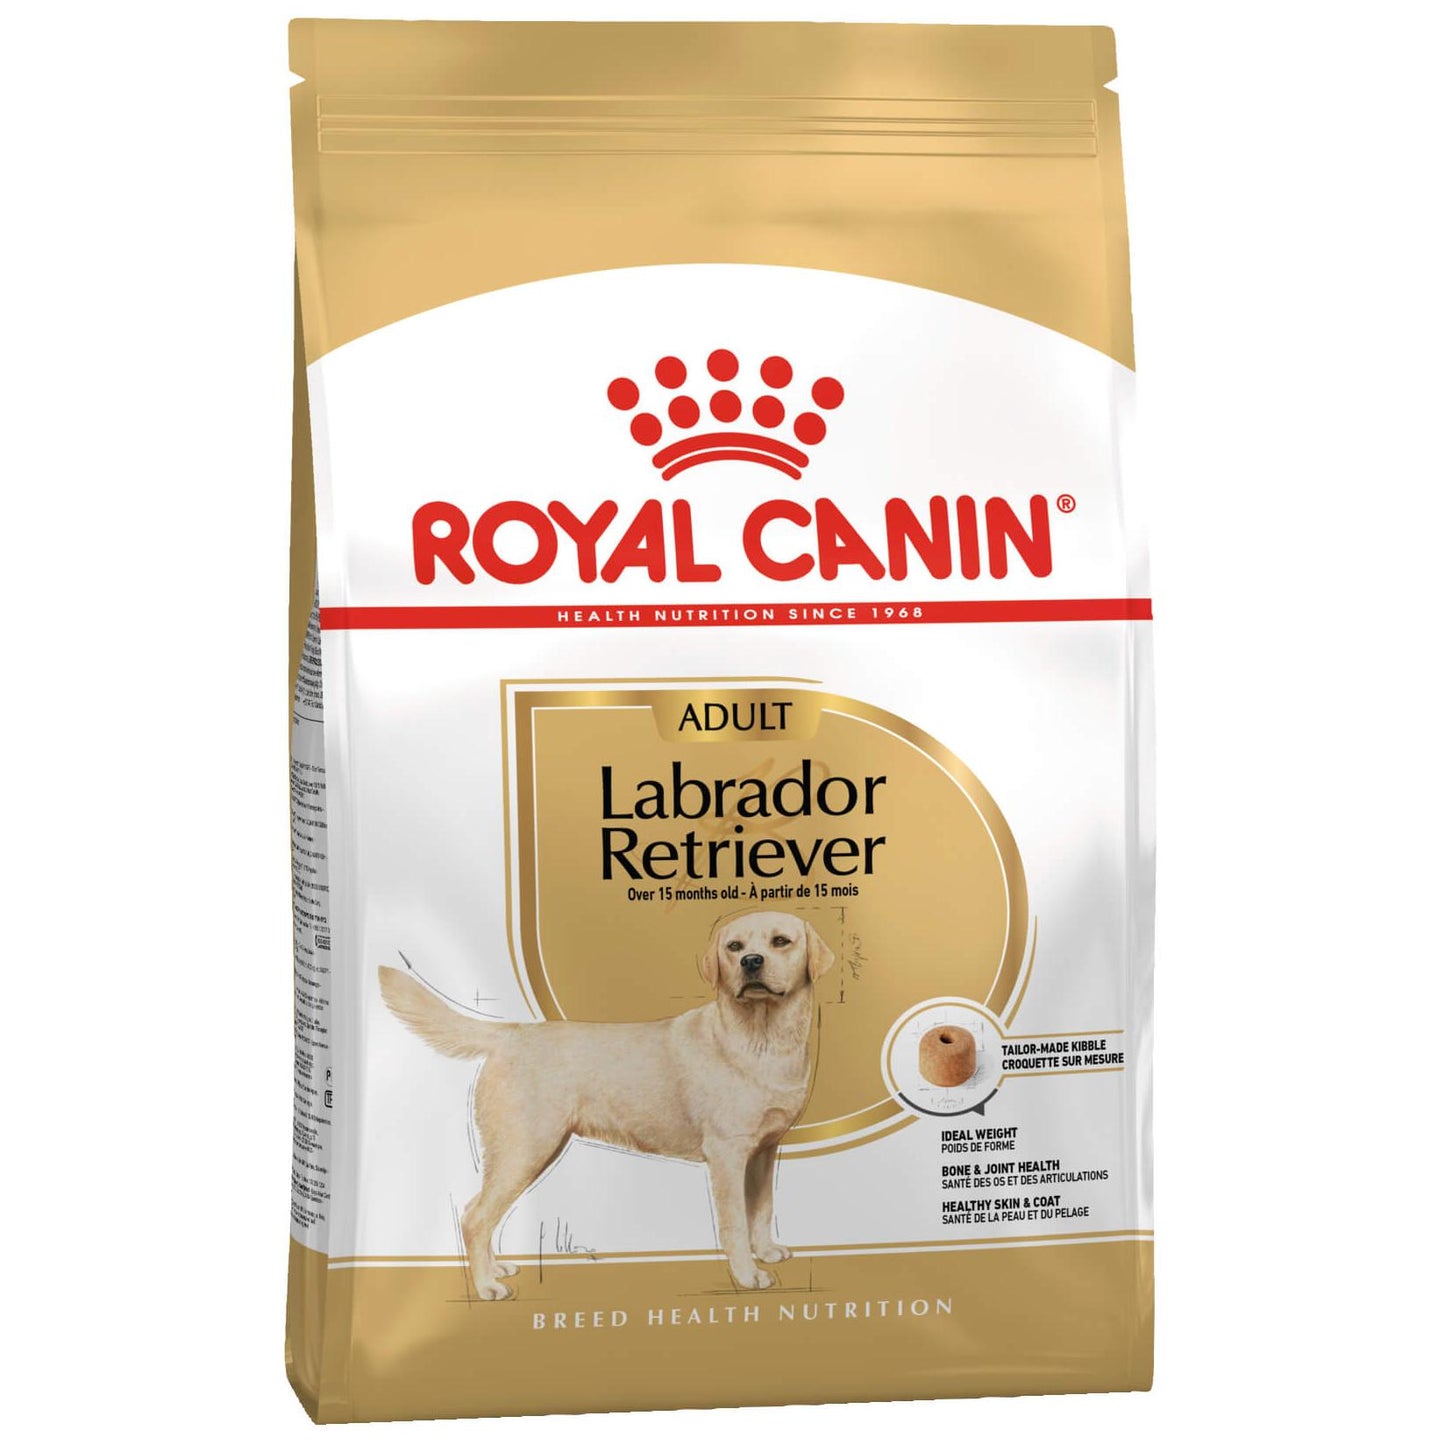 Royal Canin Labrador Retriever Dry Dog Food